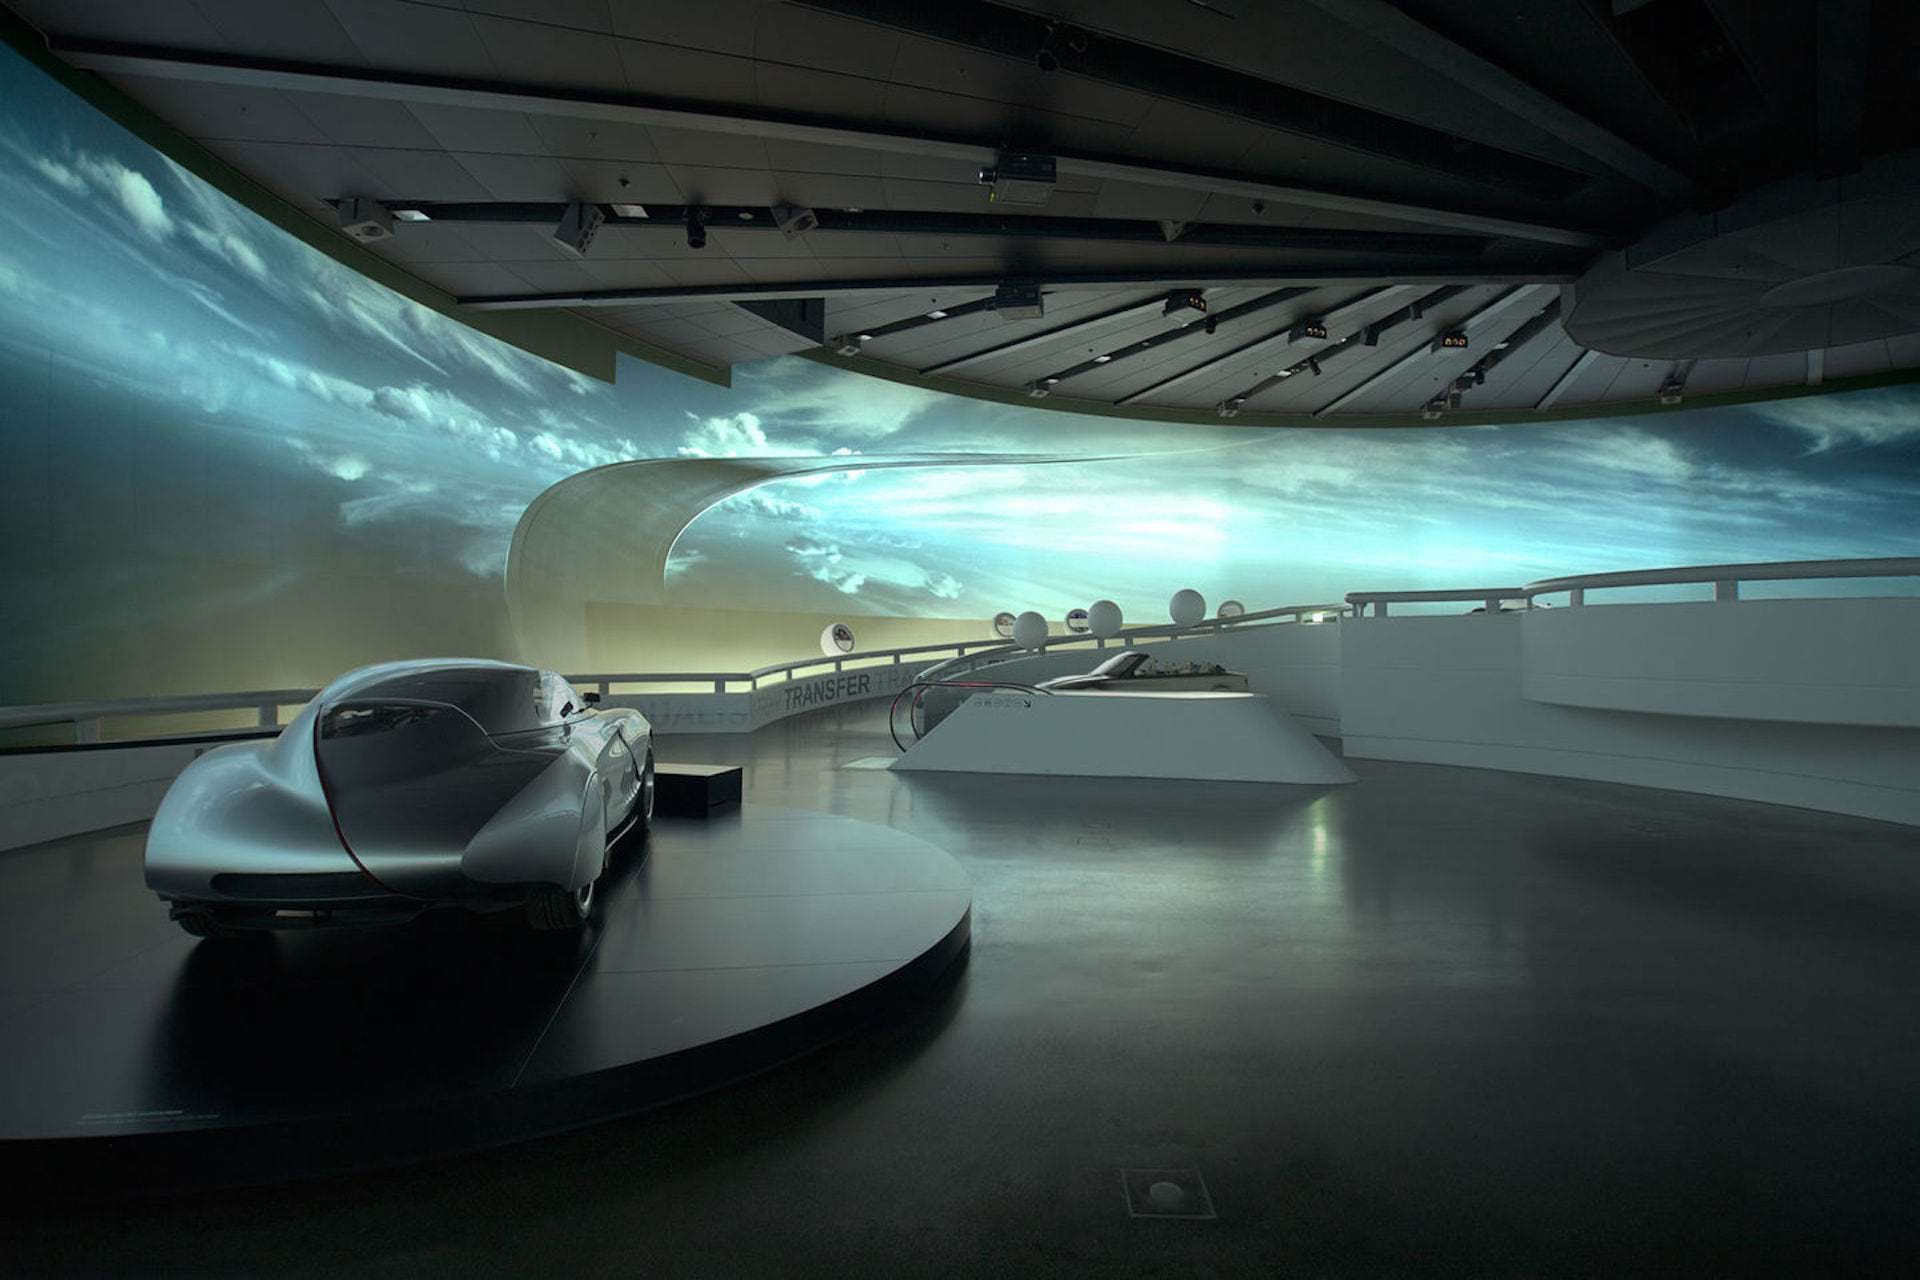 德国慕尼黑 BMW 博物馆的展览